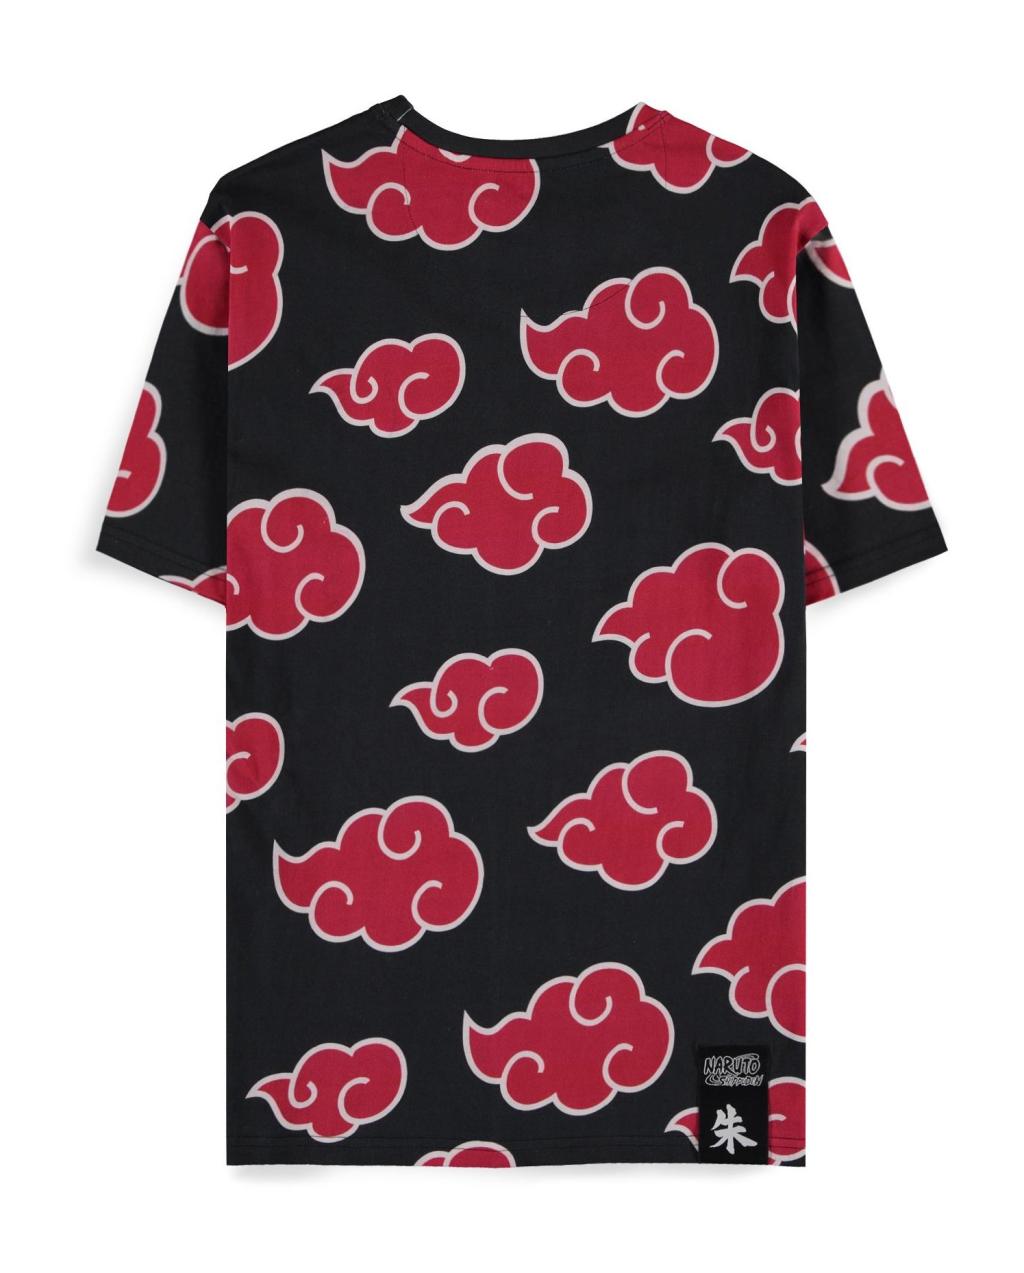 NARUTO SHIPPUDEN - Itachi Clouds - Men's T-shirt (XS)